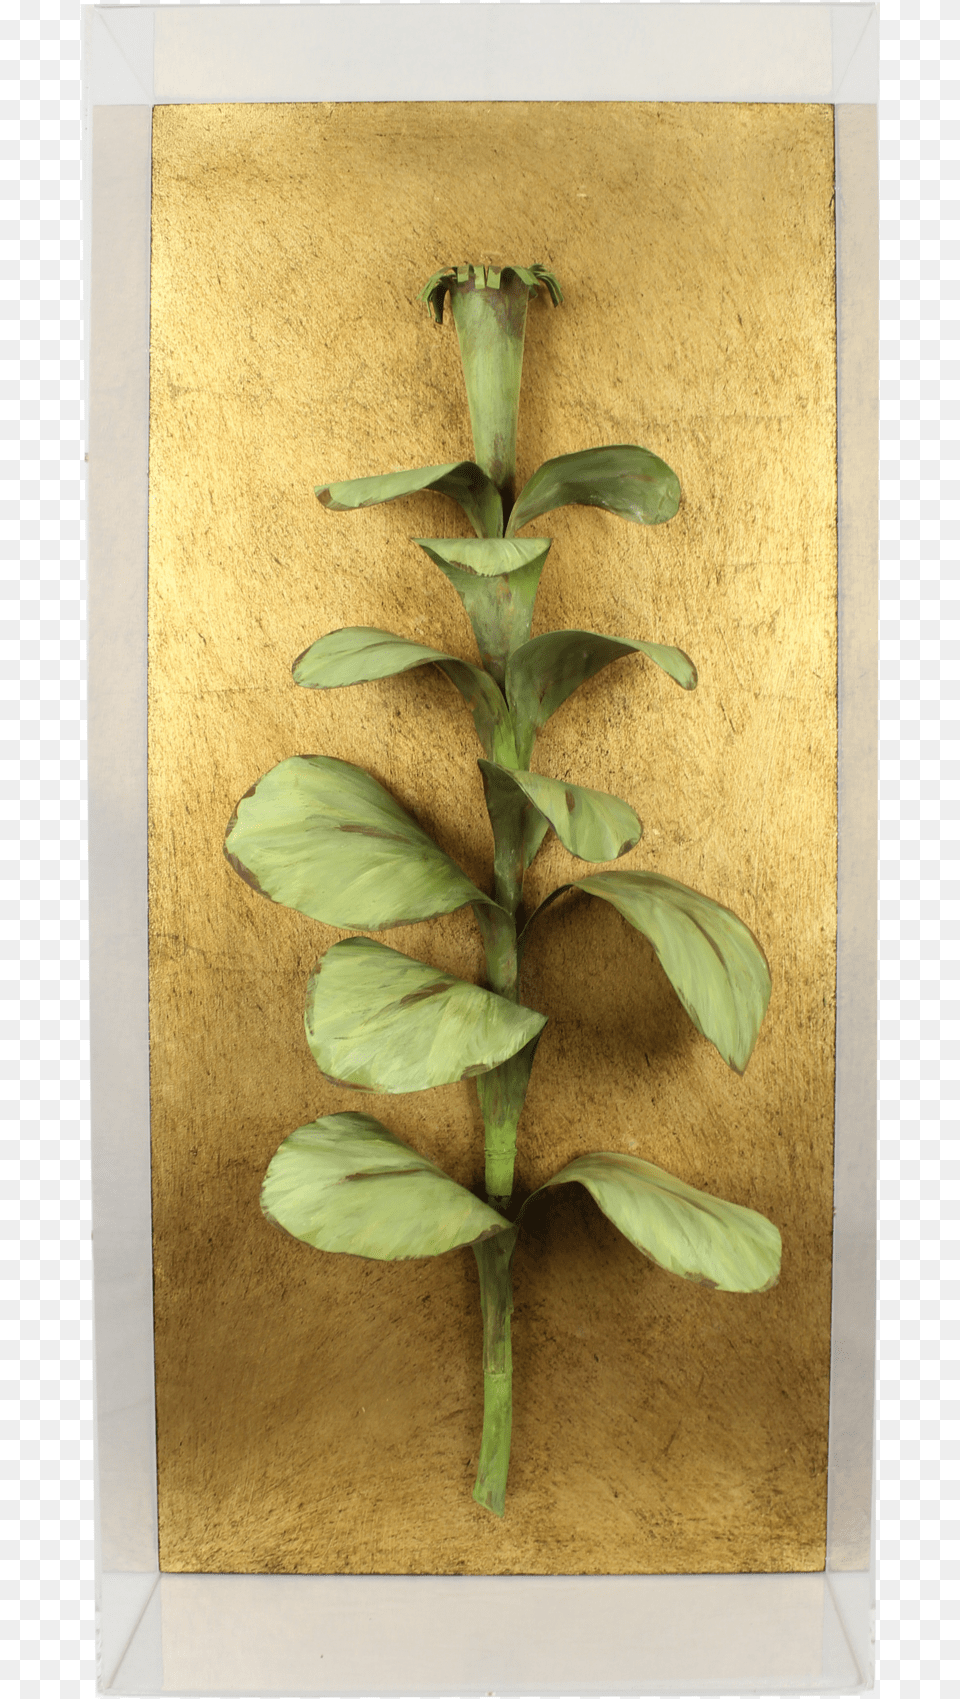 Tobacco, Leaf, Plant, Wood, Flower Free Transparent Png